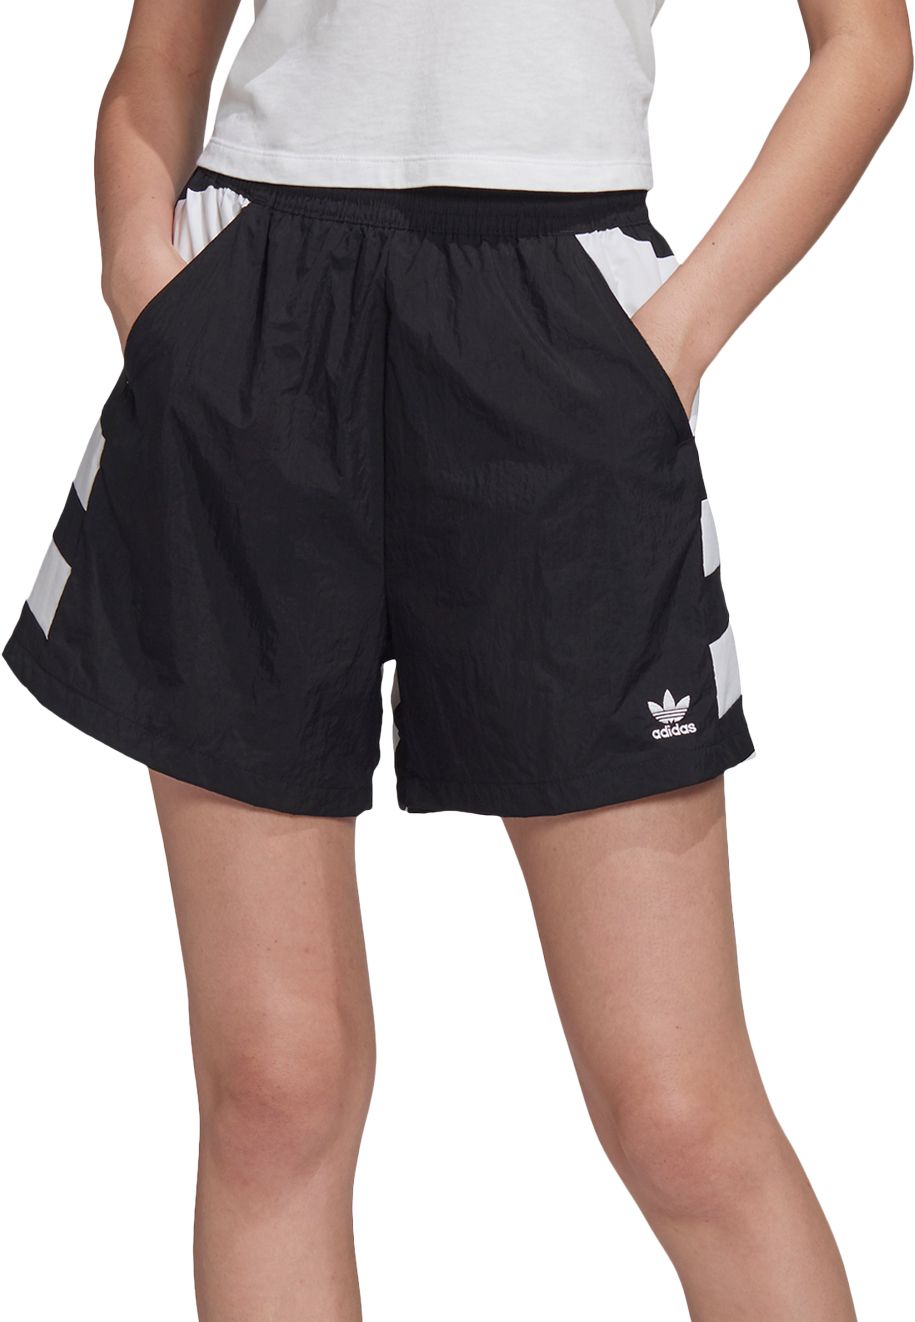 adidas shorts and top set womens